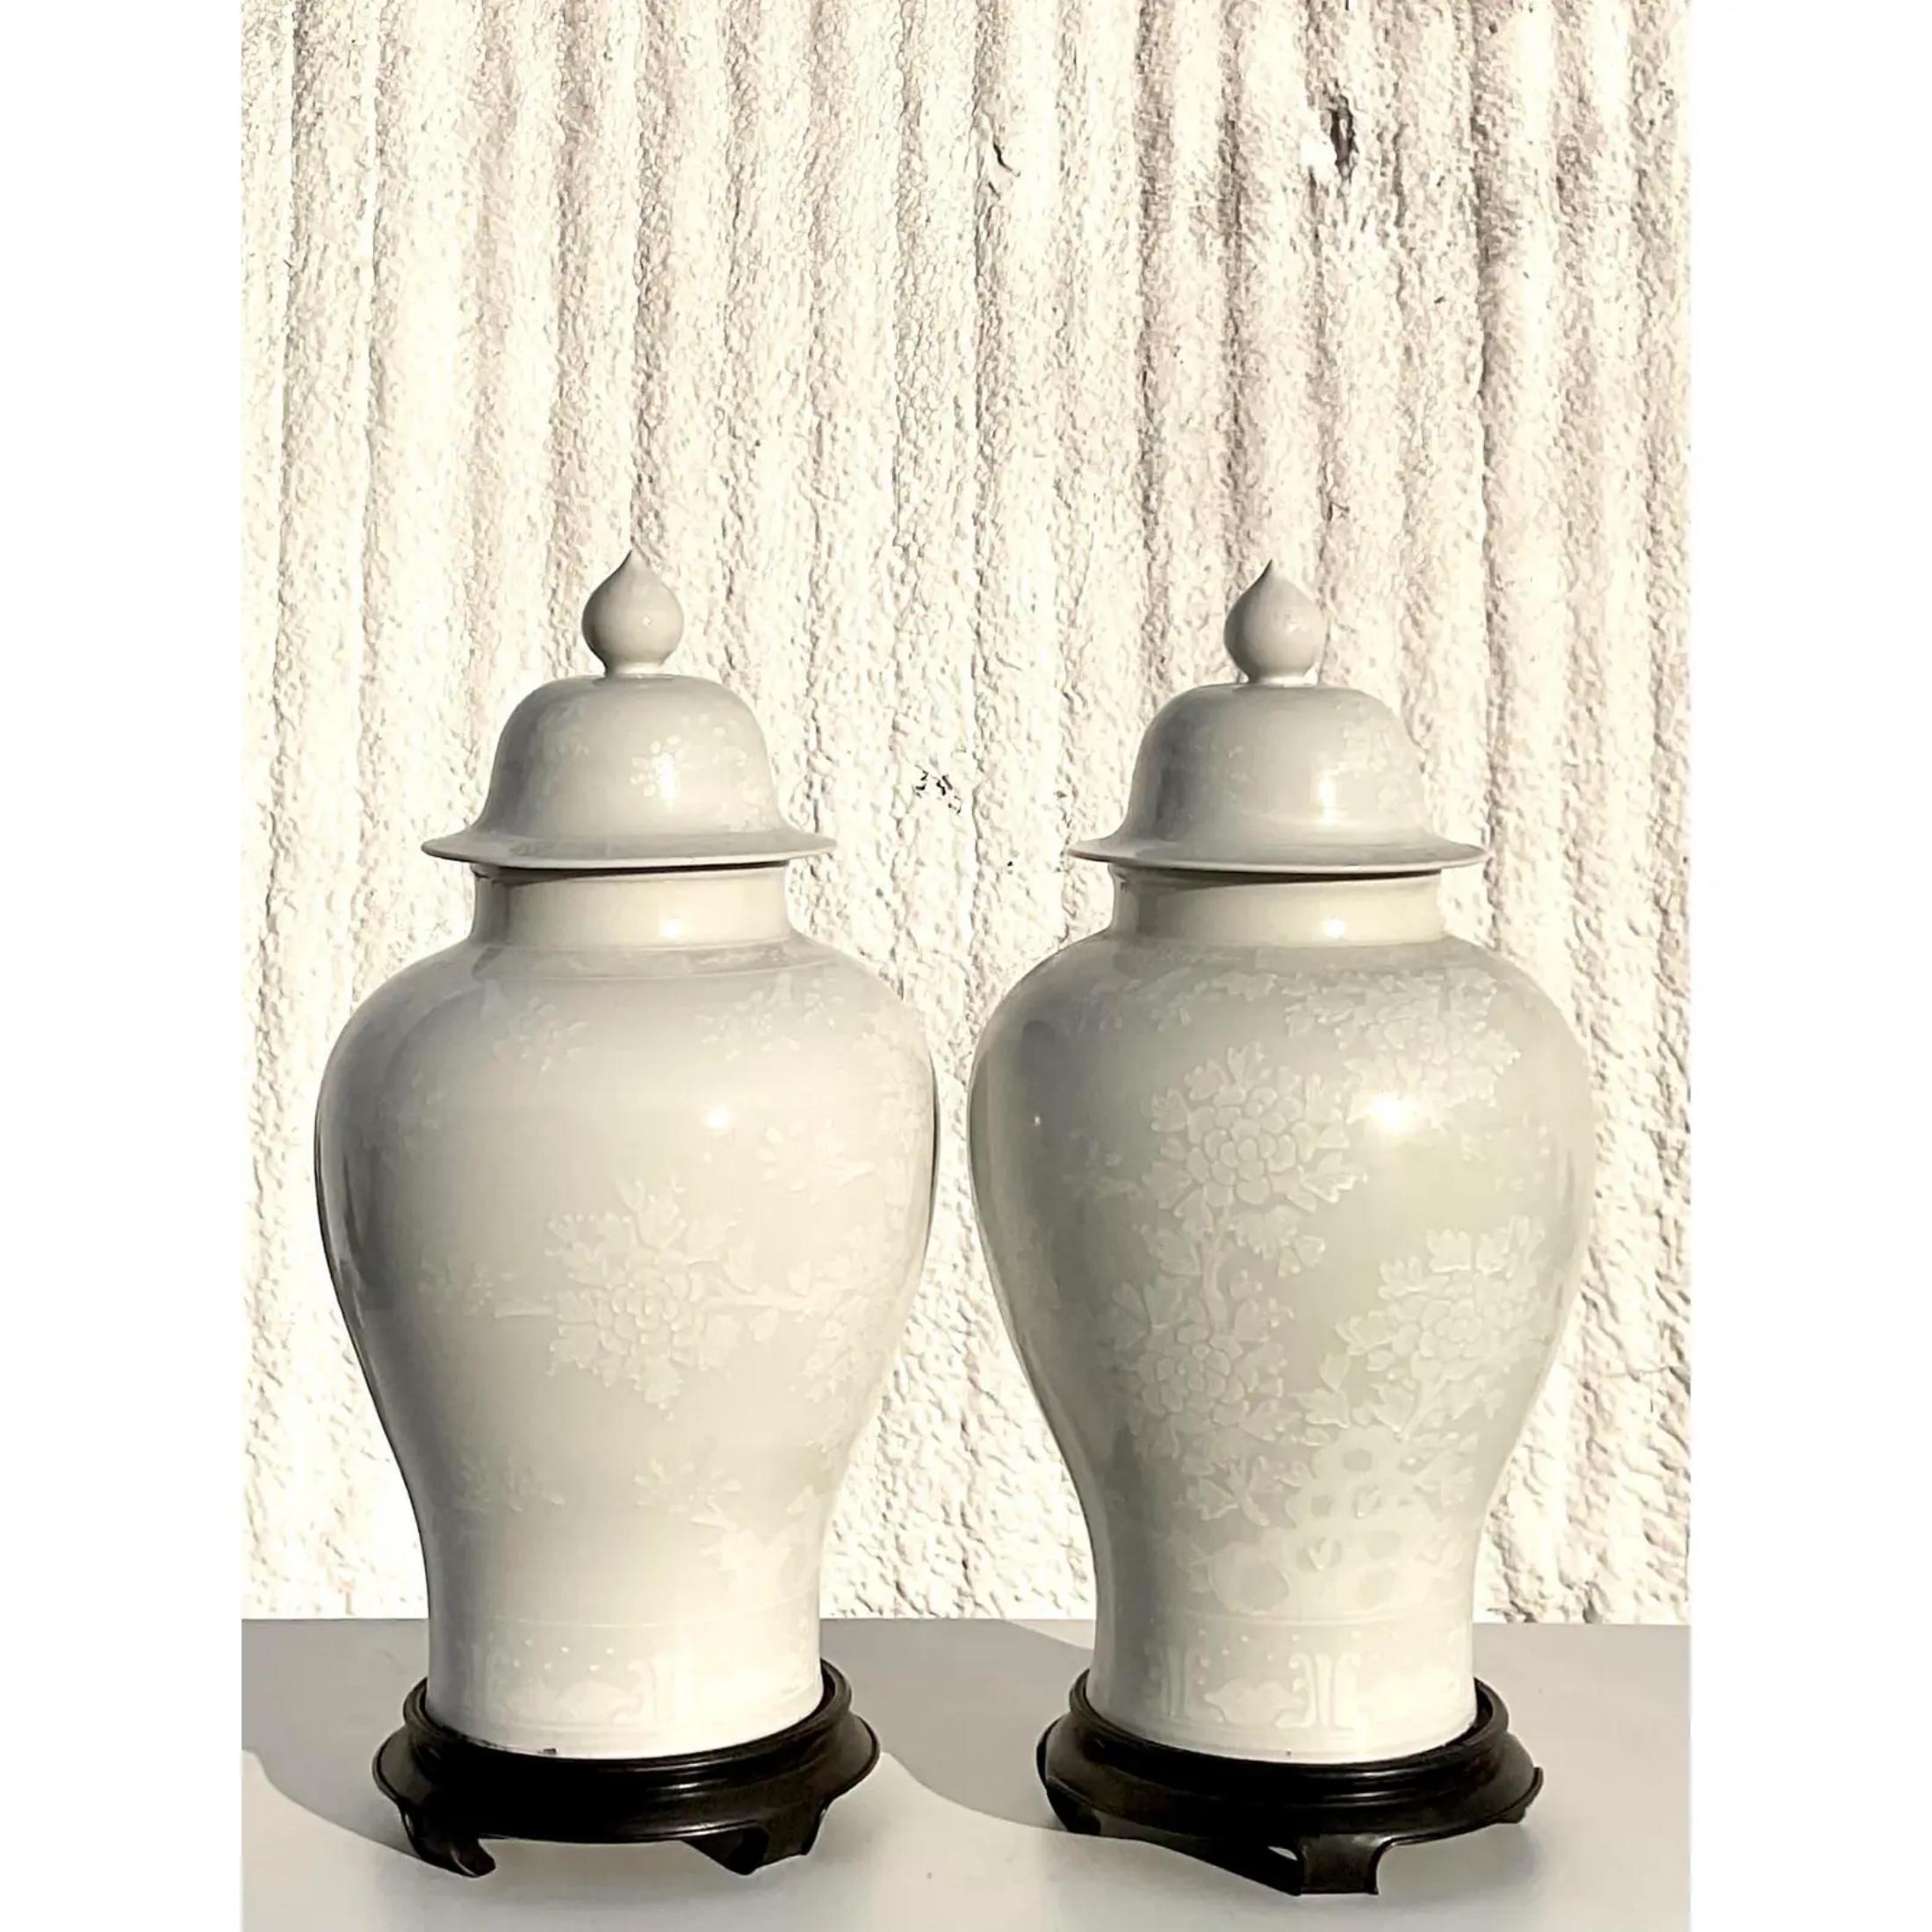 Fabuleuse paire d'urnes asiatiques blanches en forme de jarre au gingembre. Magnifique motif floral ton sur ton. Ils reposent sur des socles en bois d'ébène. Acquis d'une succession de Palm Beach